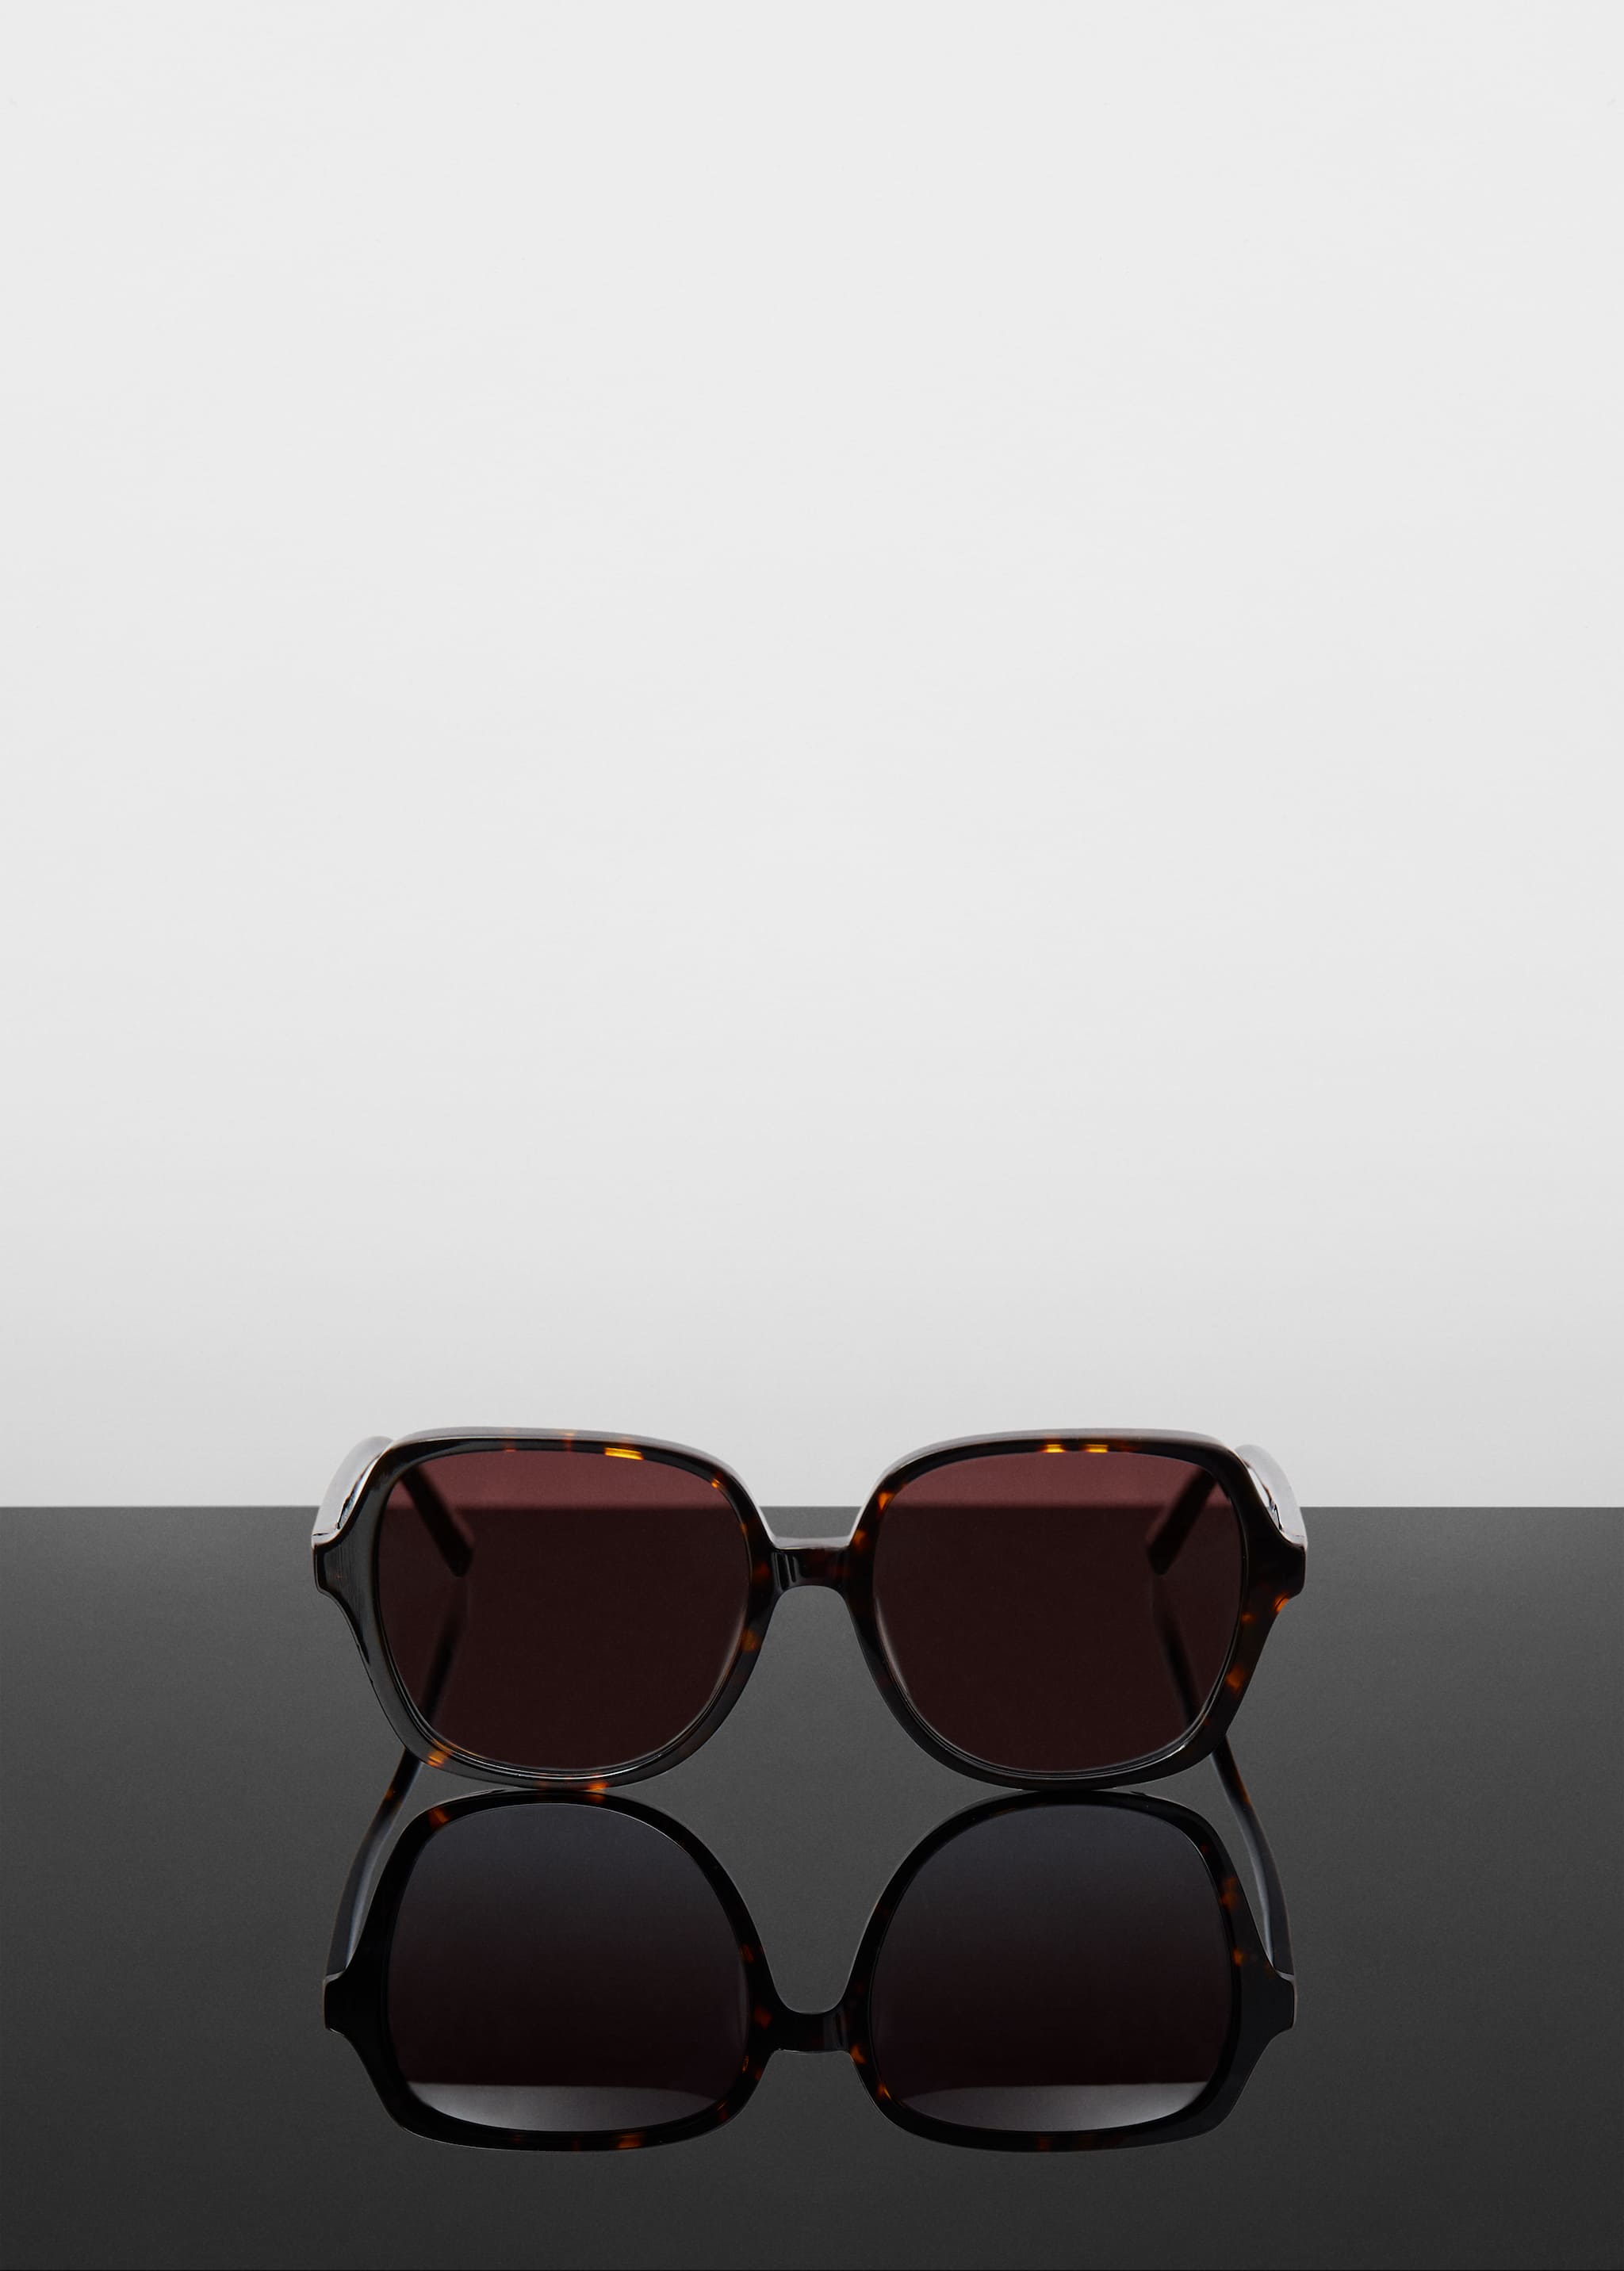 Квадратные солнцезащитные очки под панцирь черепахи - Изделие без модели